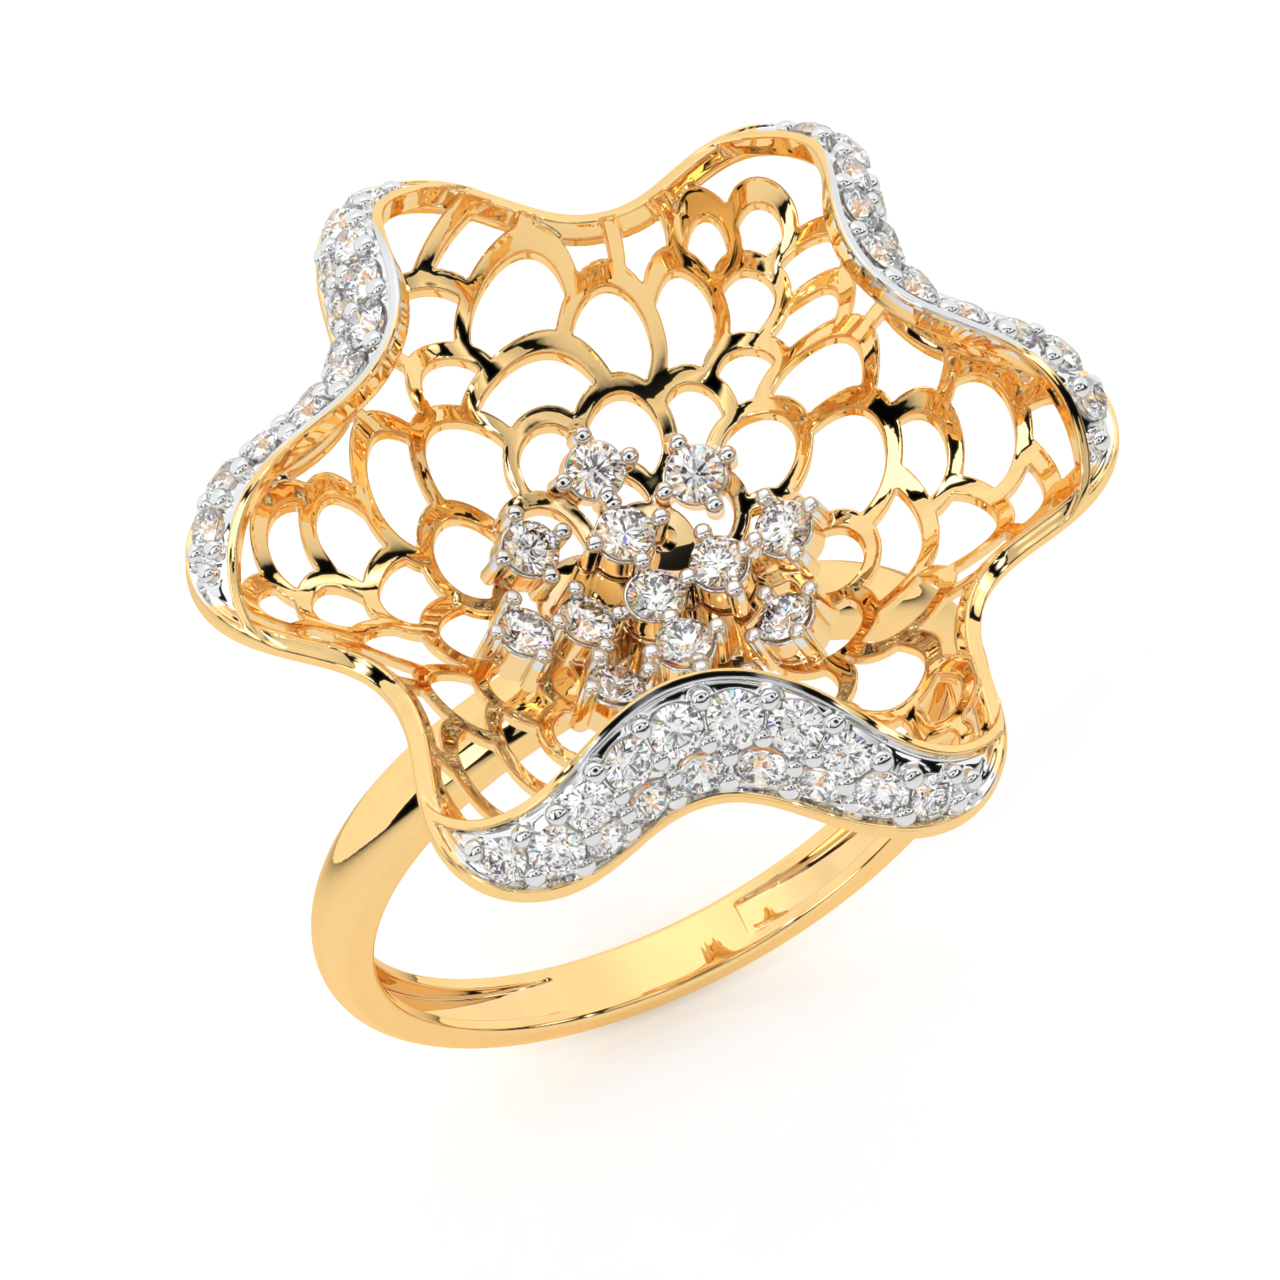 The Opening Flower Design Diamond Ring